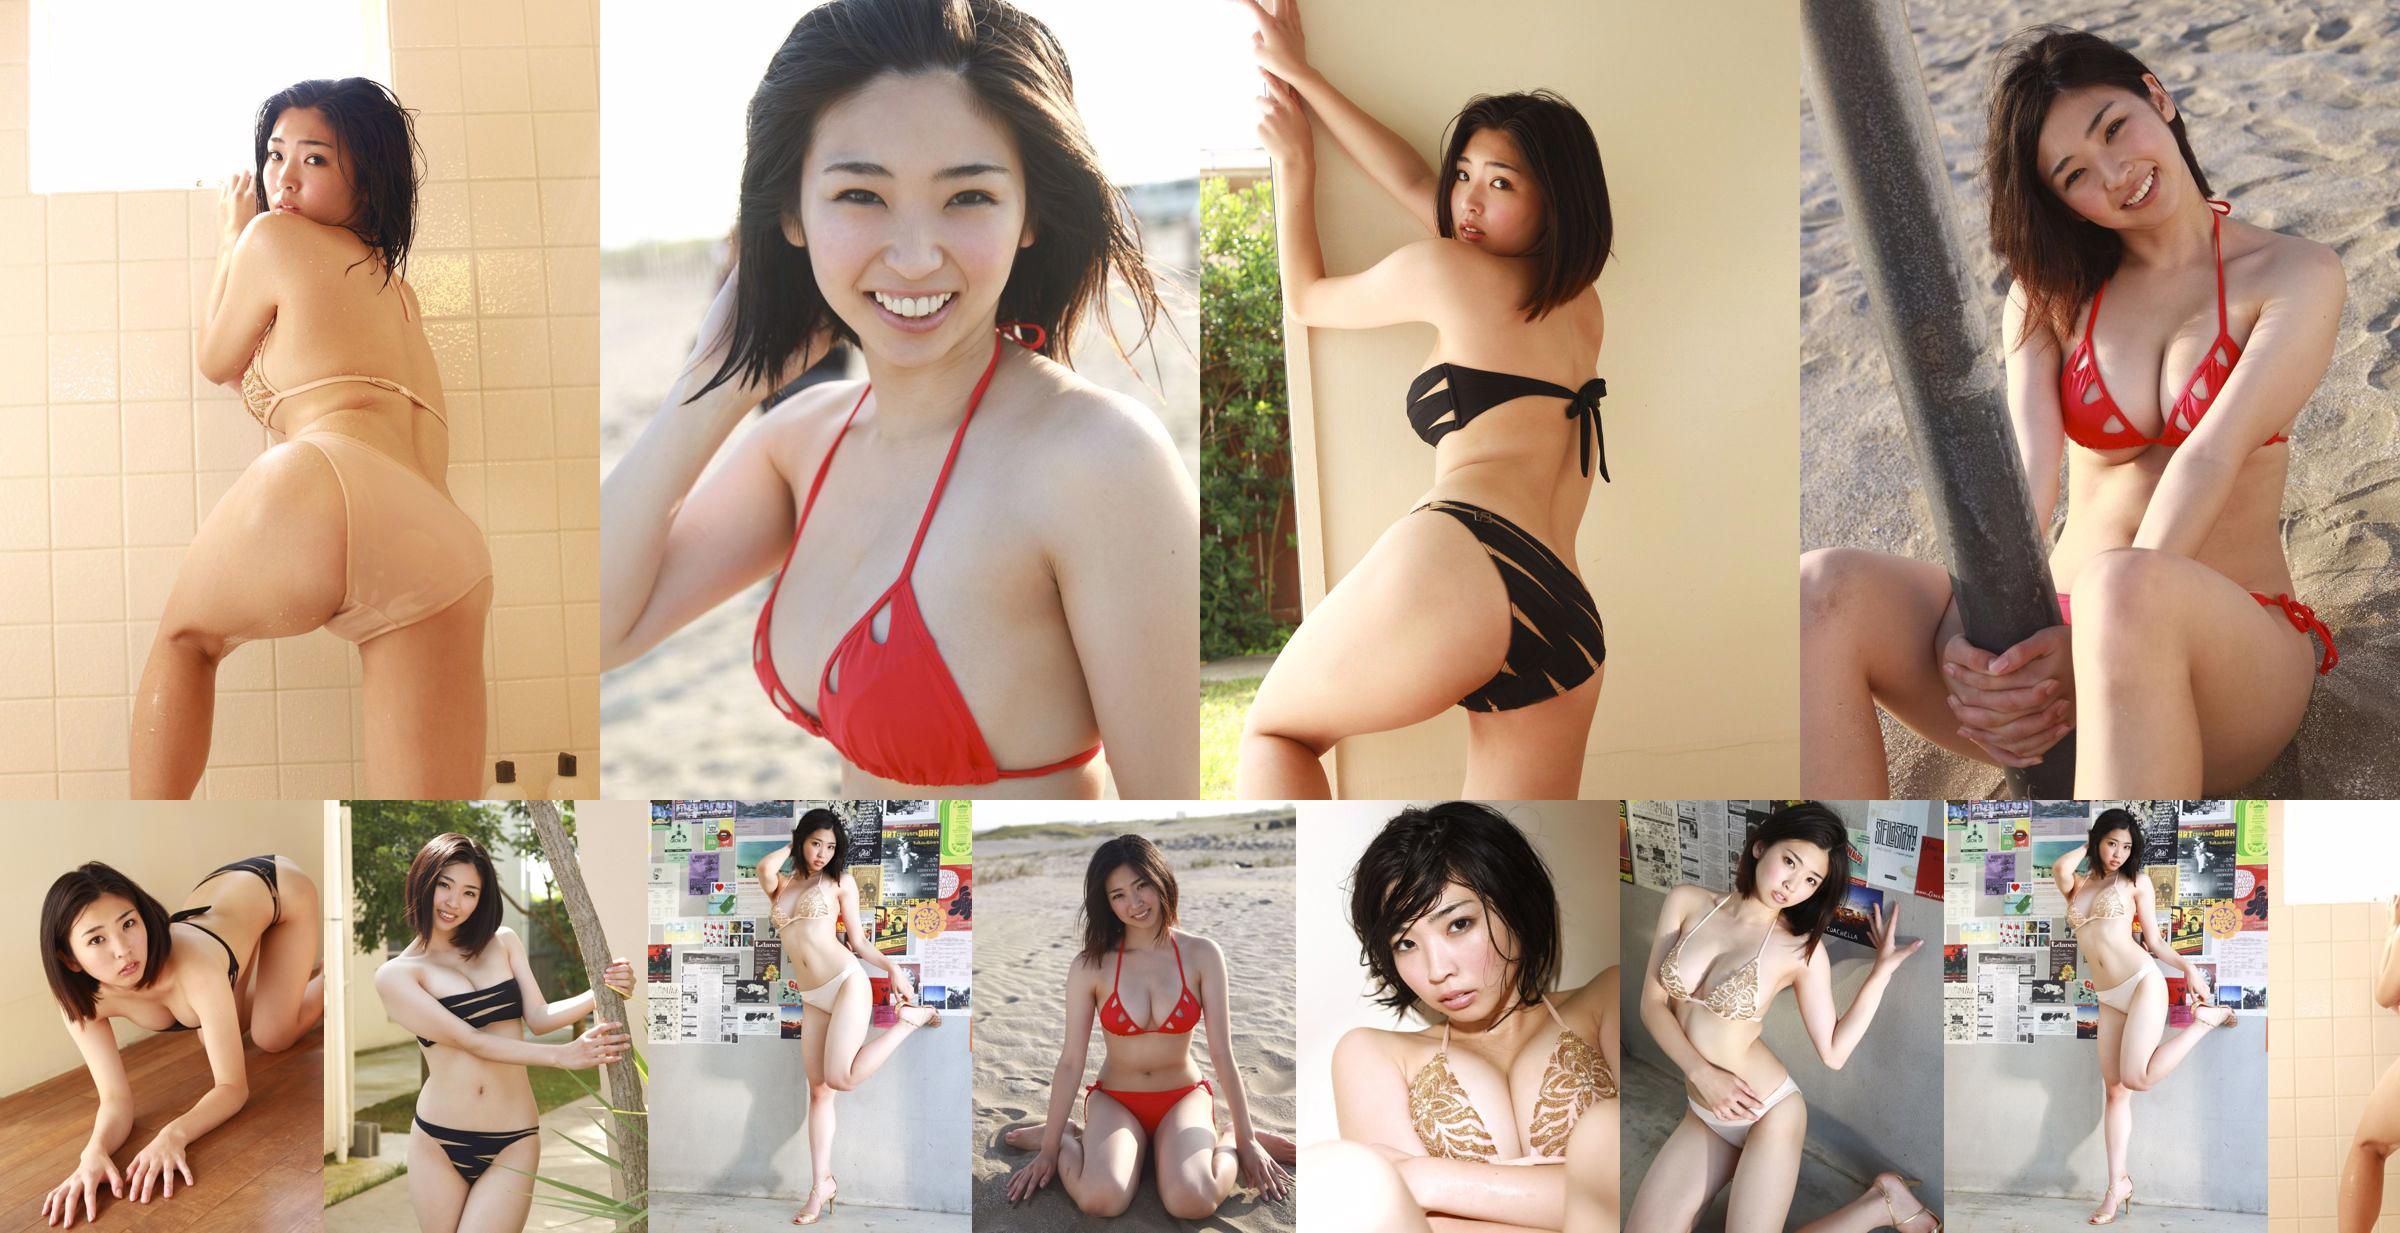 Natsuki Hyuga "Memories of summer" [Sabra.net] StriCtly Girls No.762b63 Halaman 1